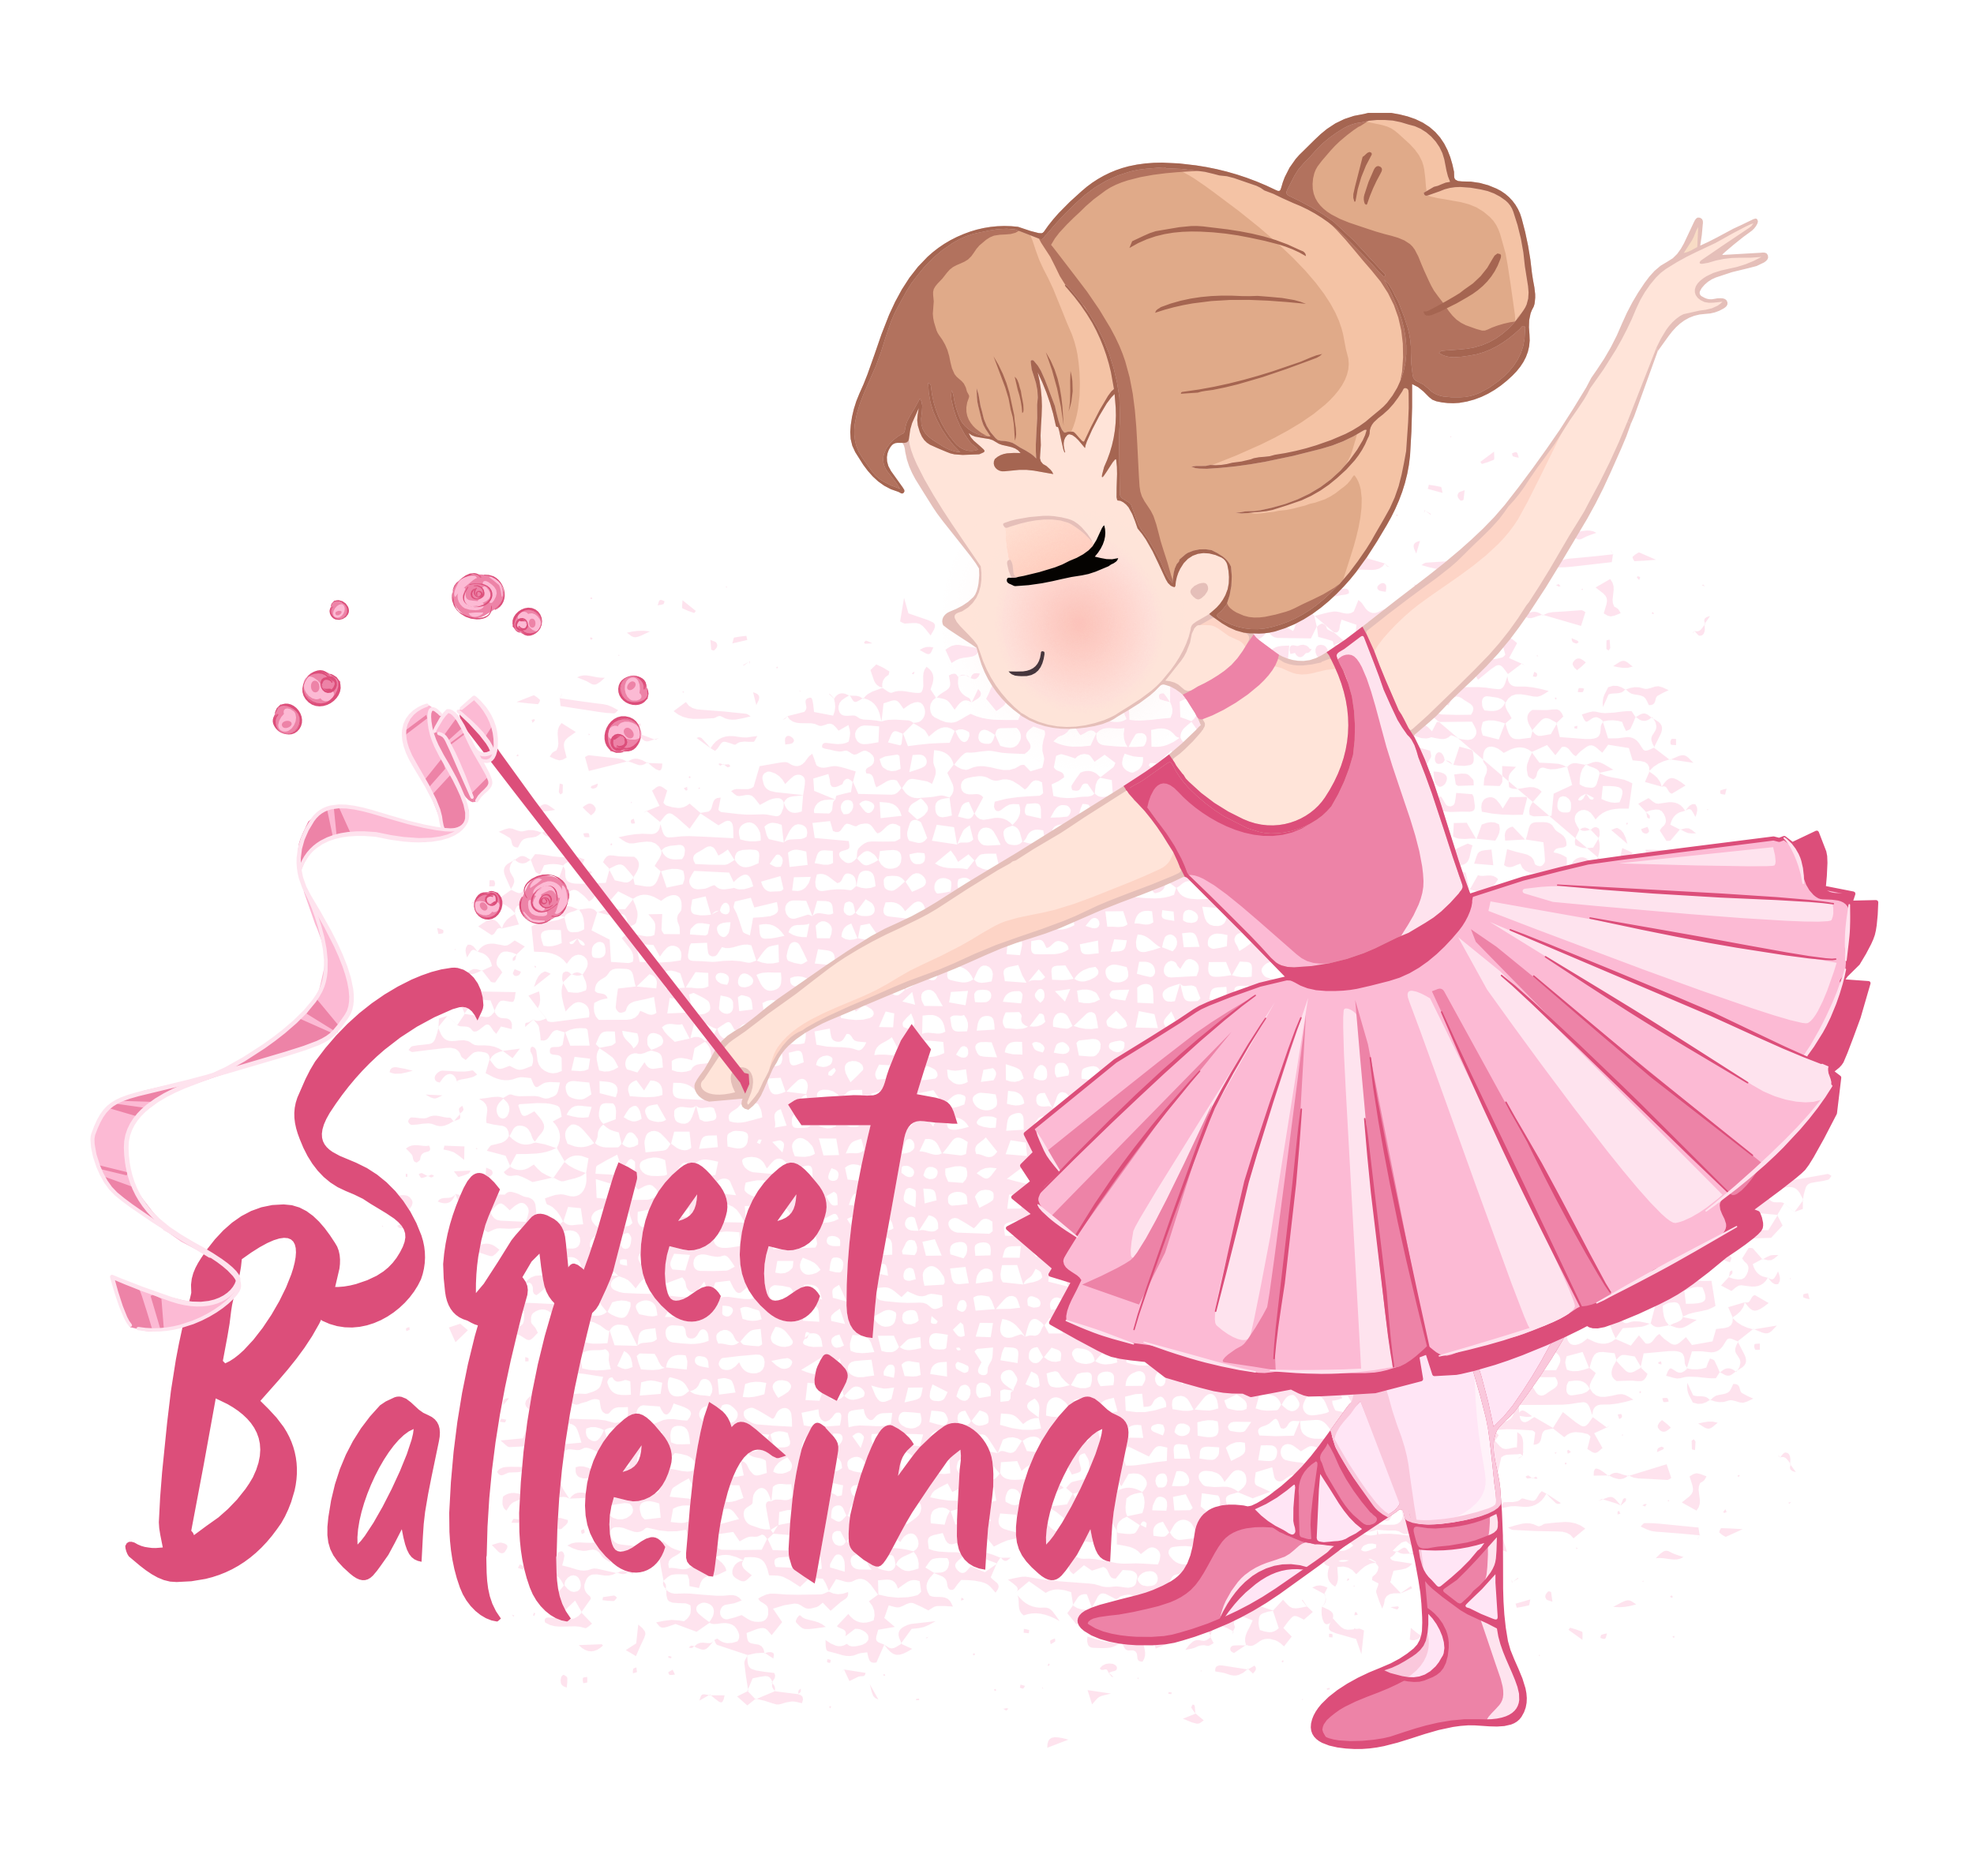 sweetballerina